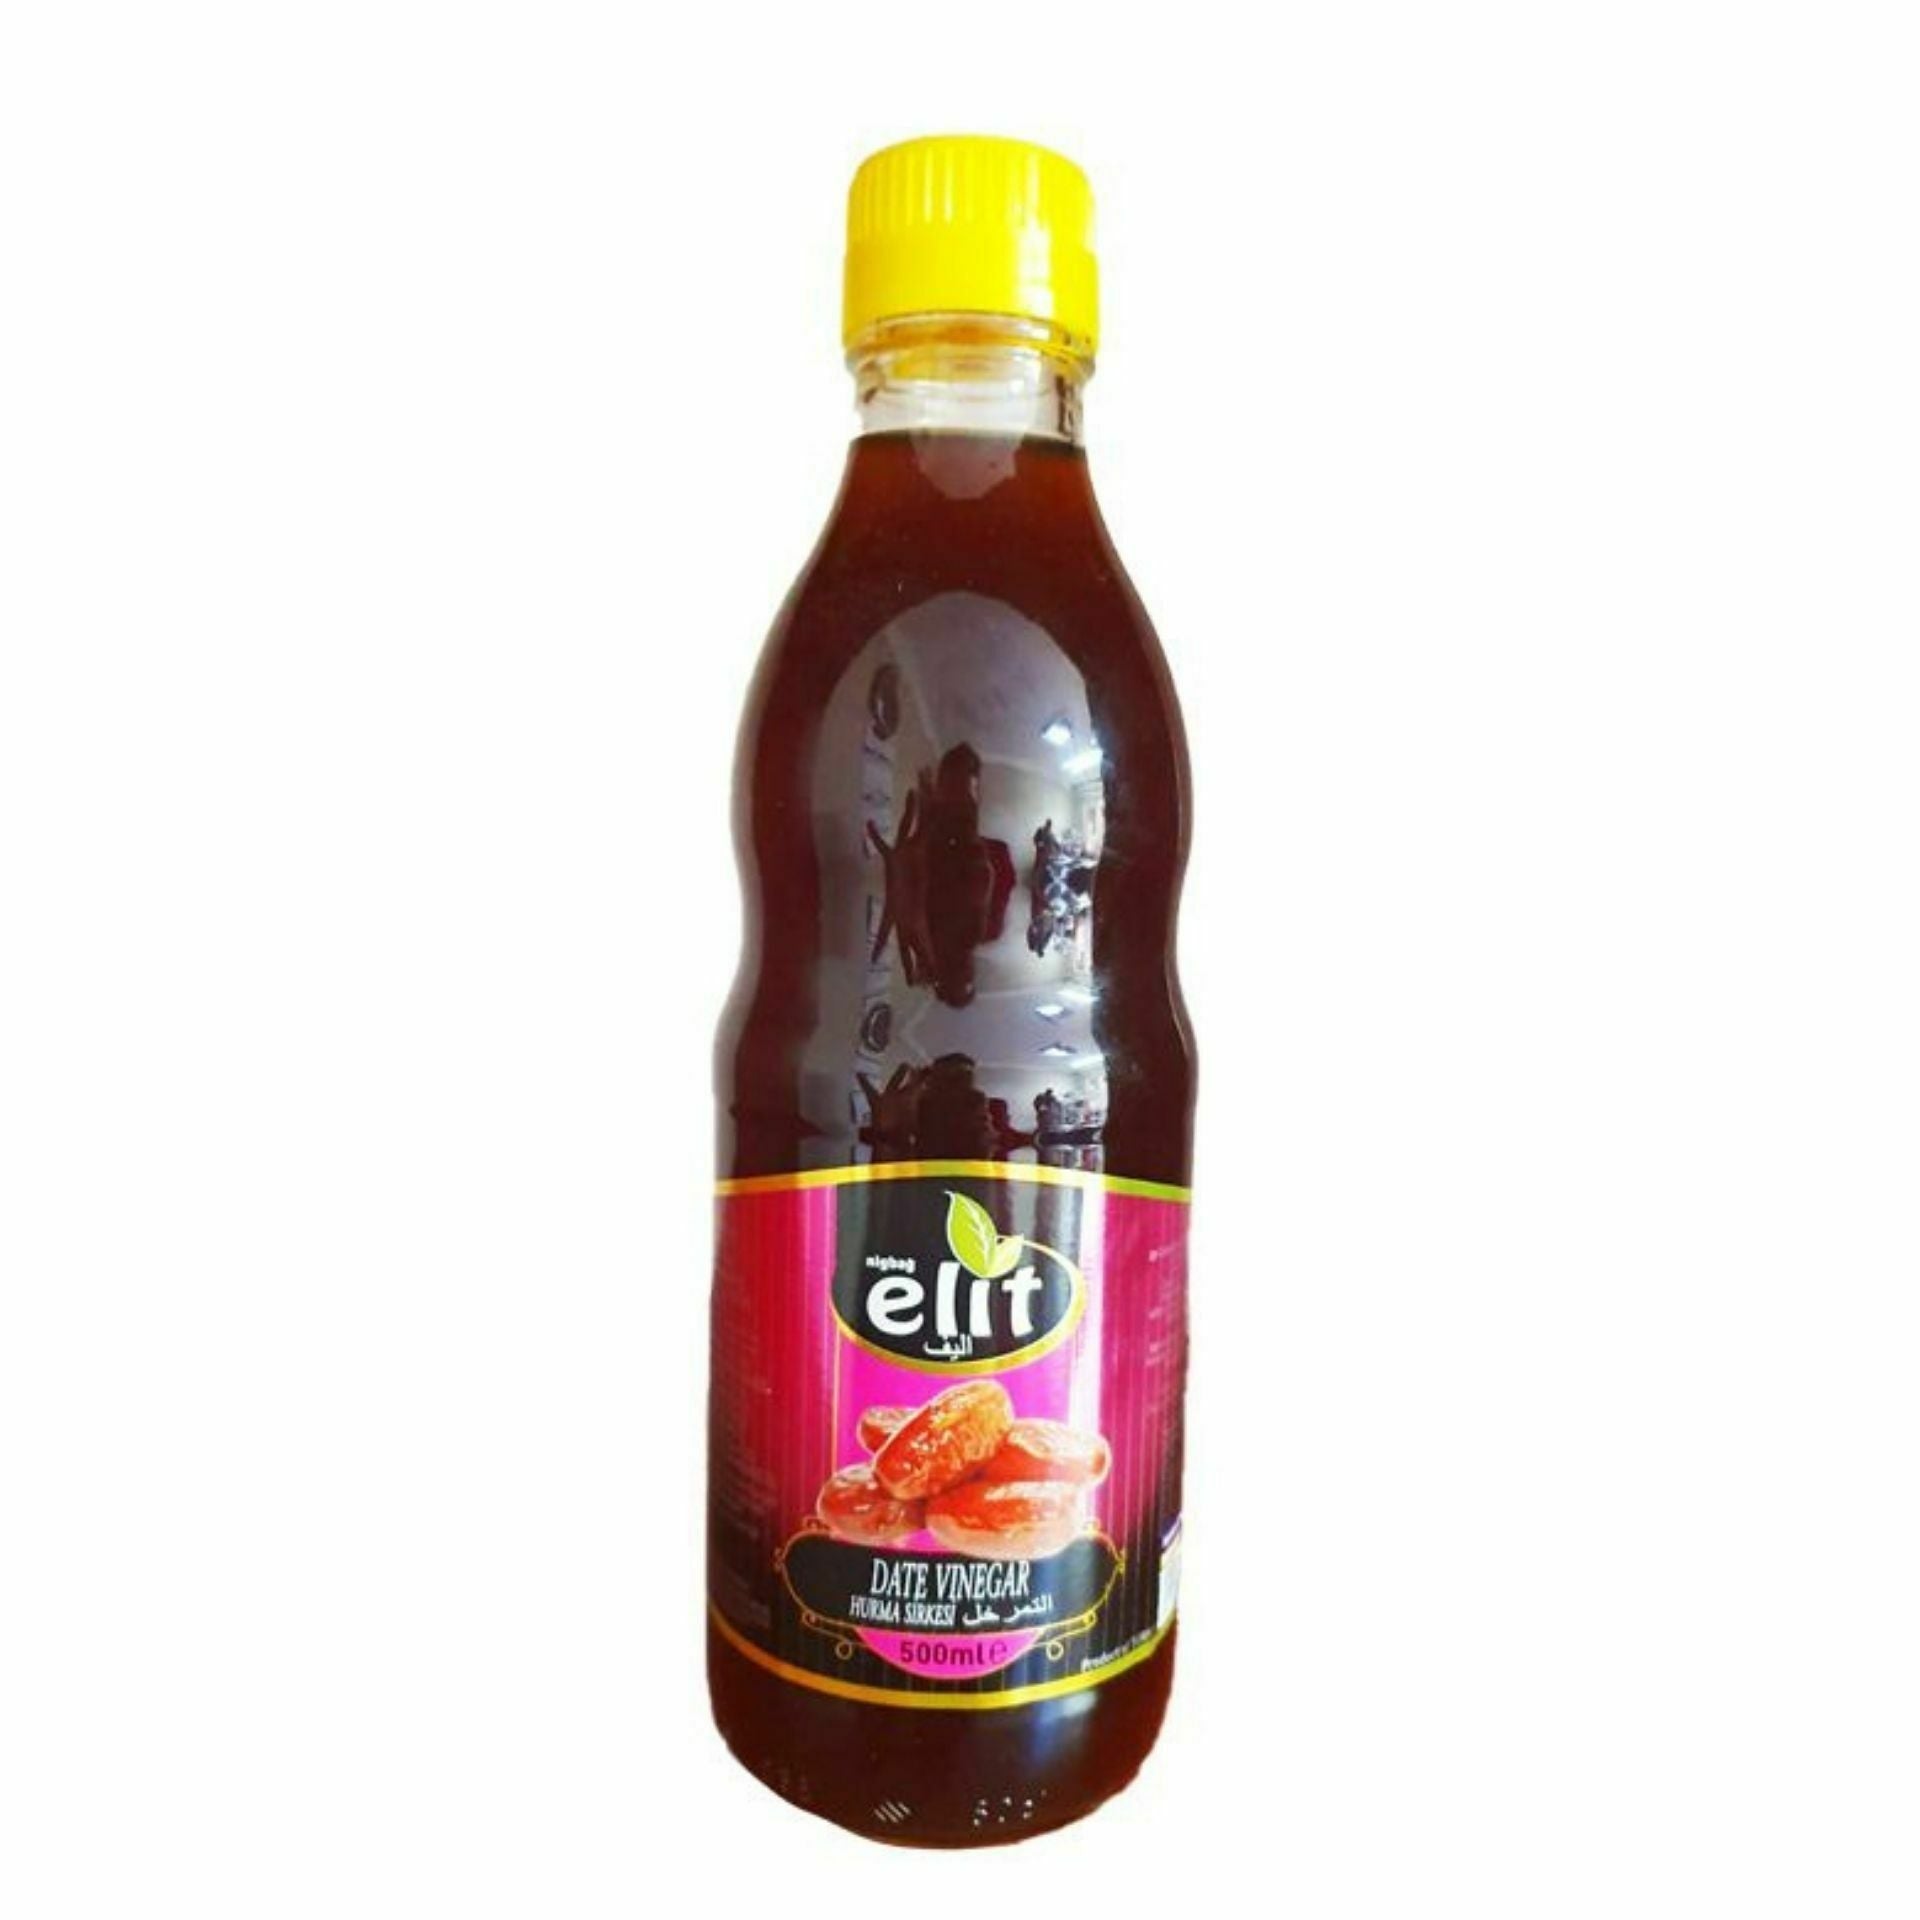 Elit Date Vinegar (500ml) - Aytac Foods